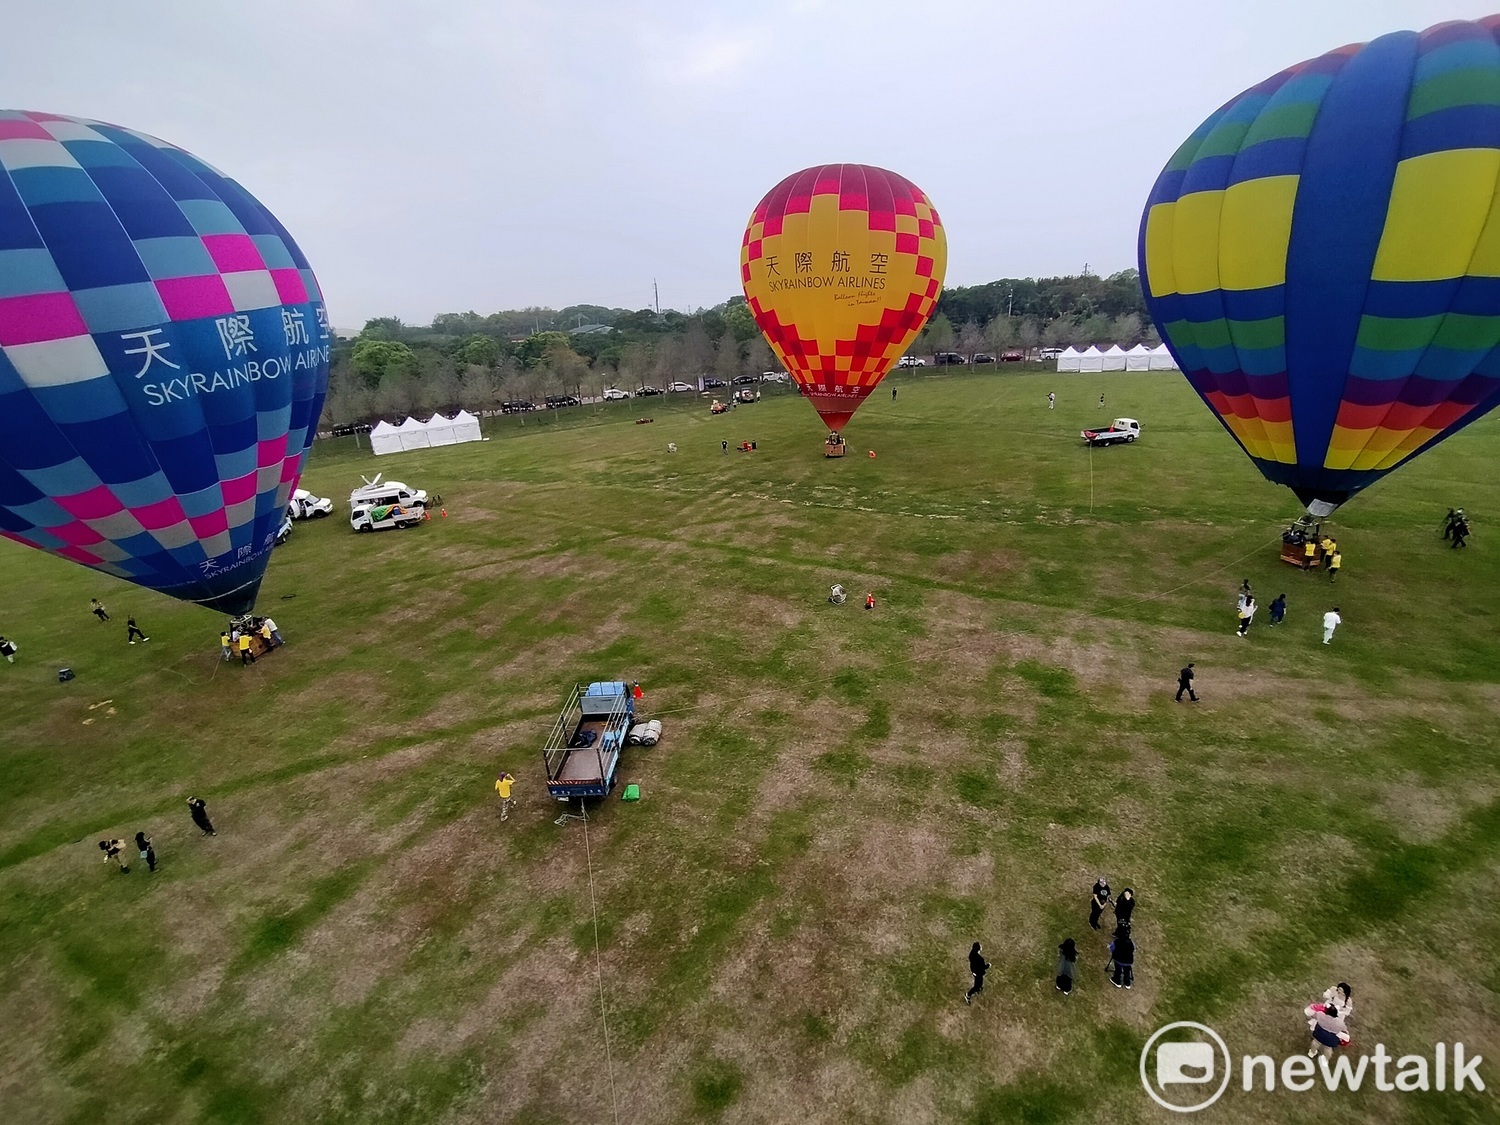 熱氣球飛進落羽松大草原  60公尺高空眺望美景